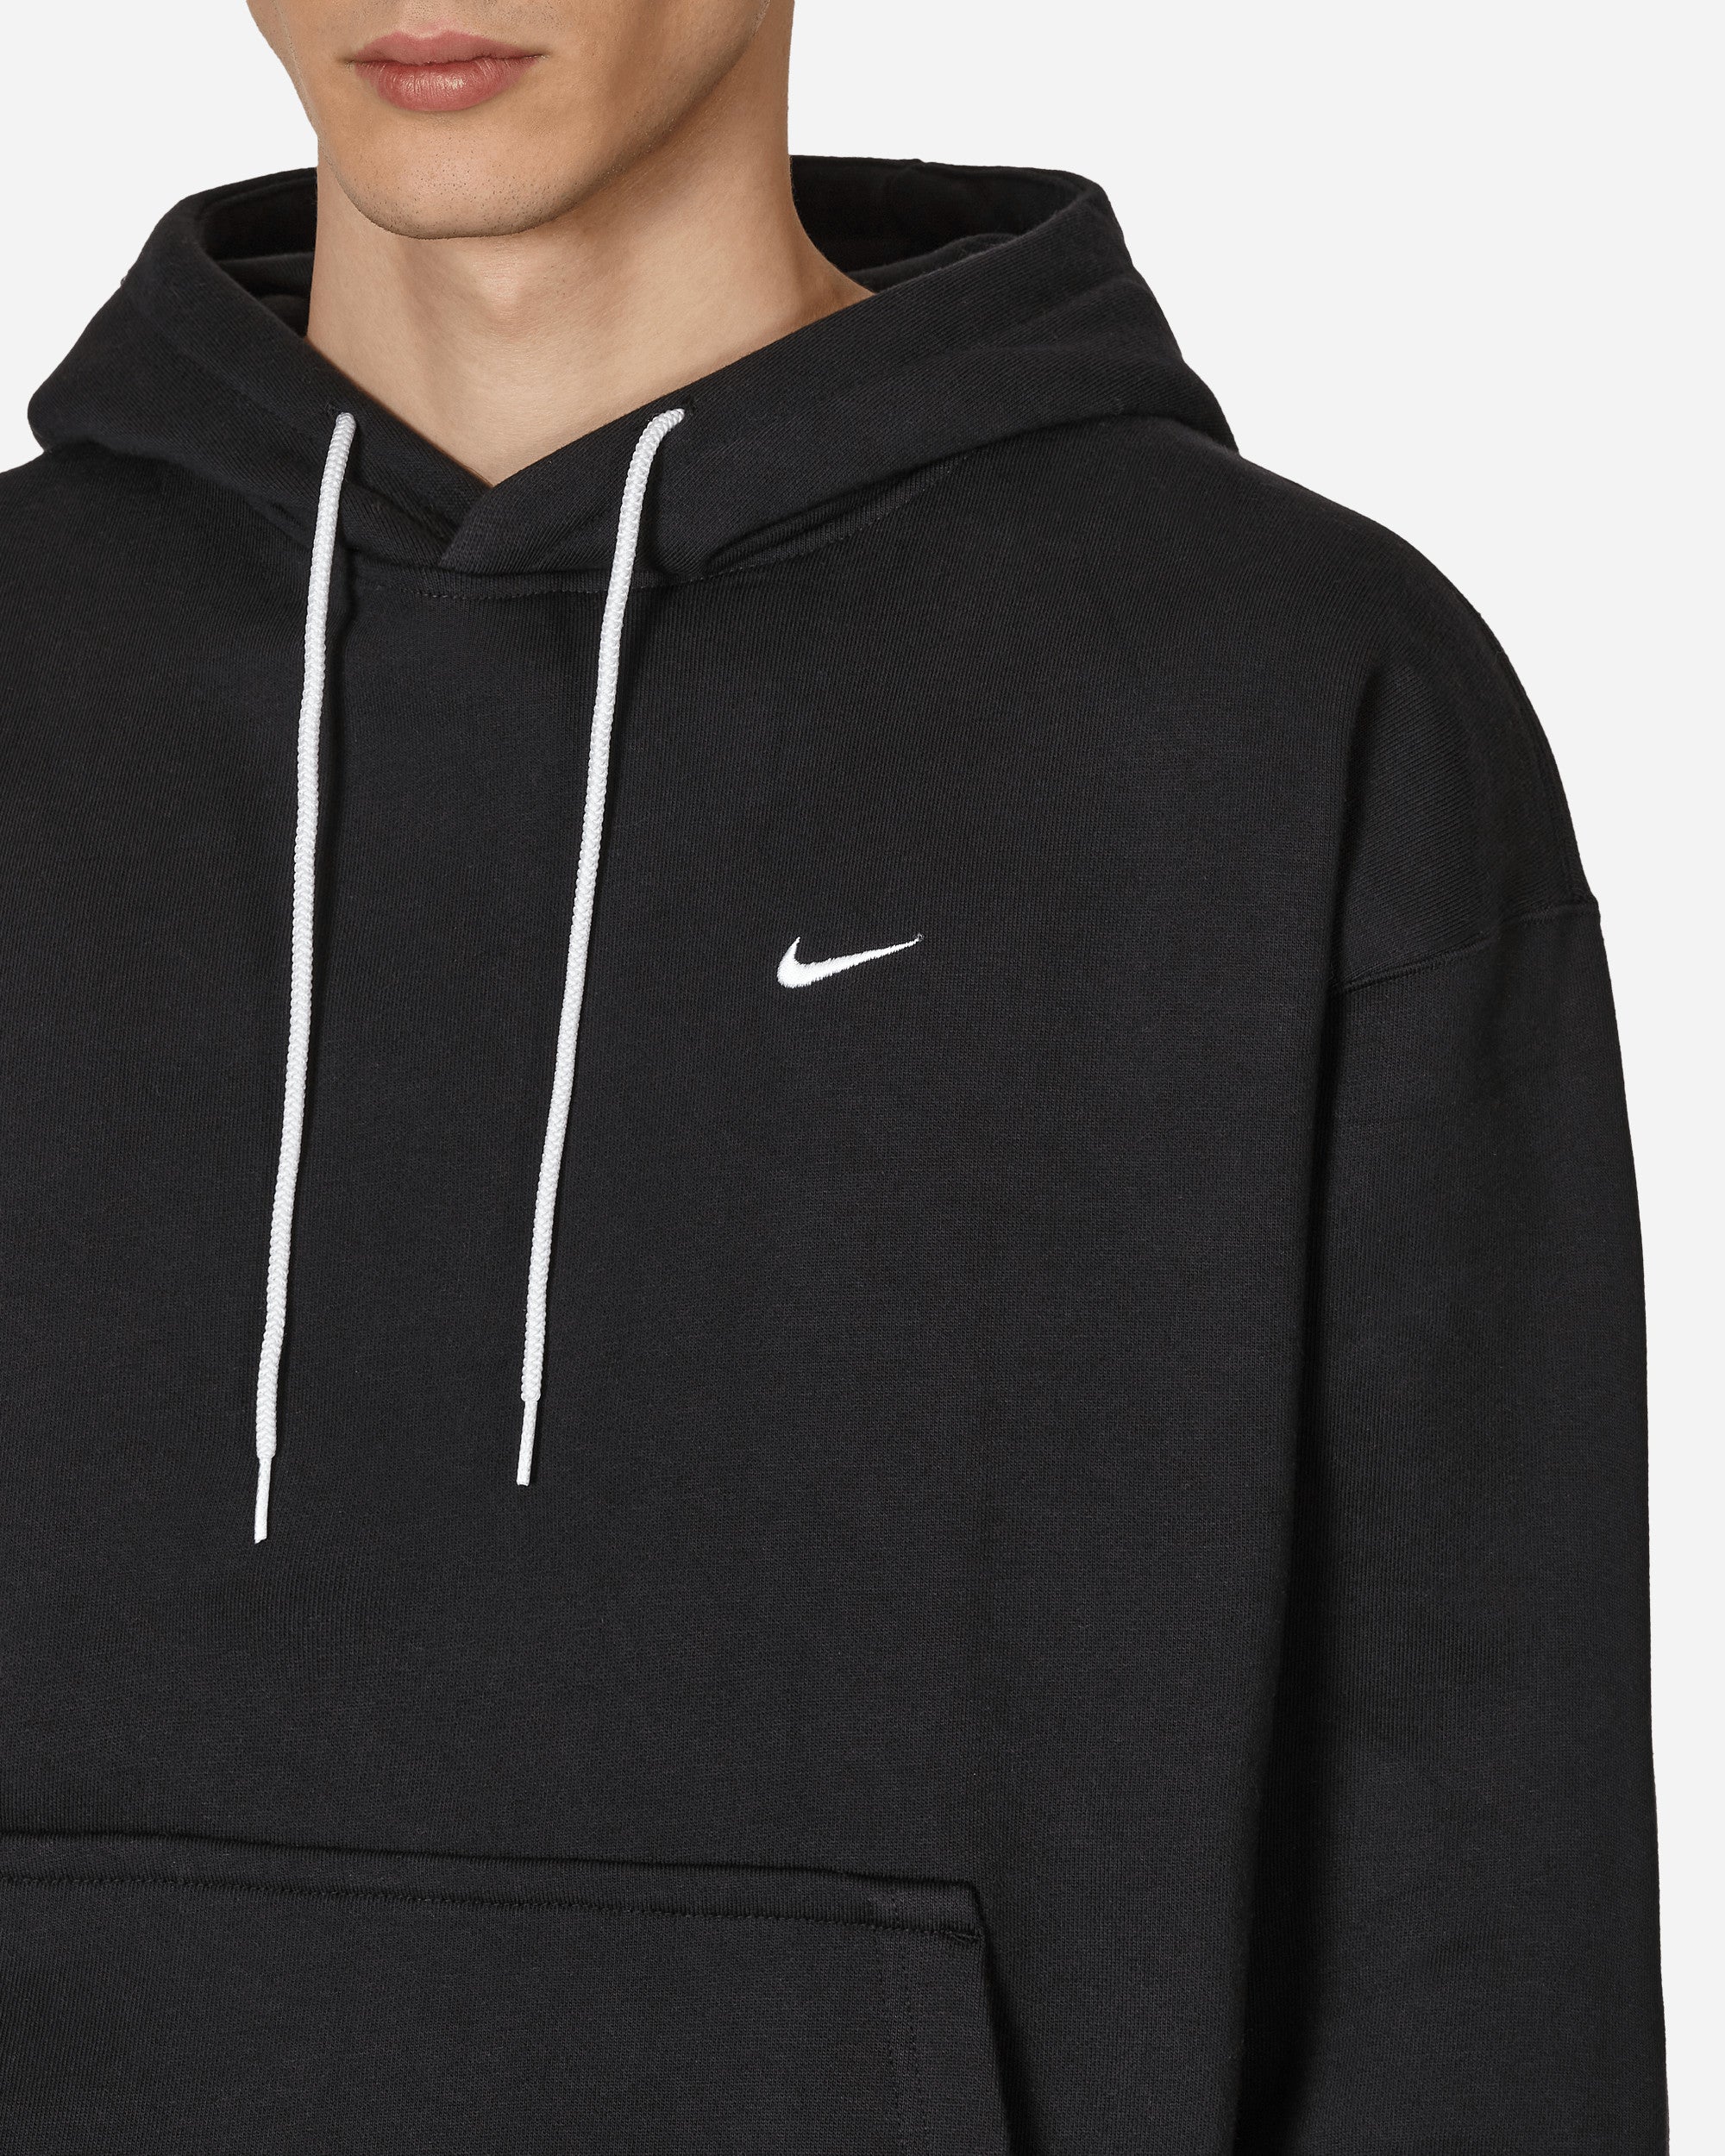 Nike Nikelab Black/White Sweatshirts Hoodies CV0552-010